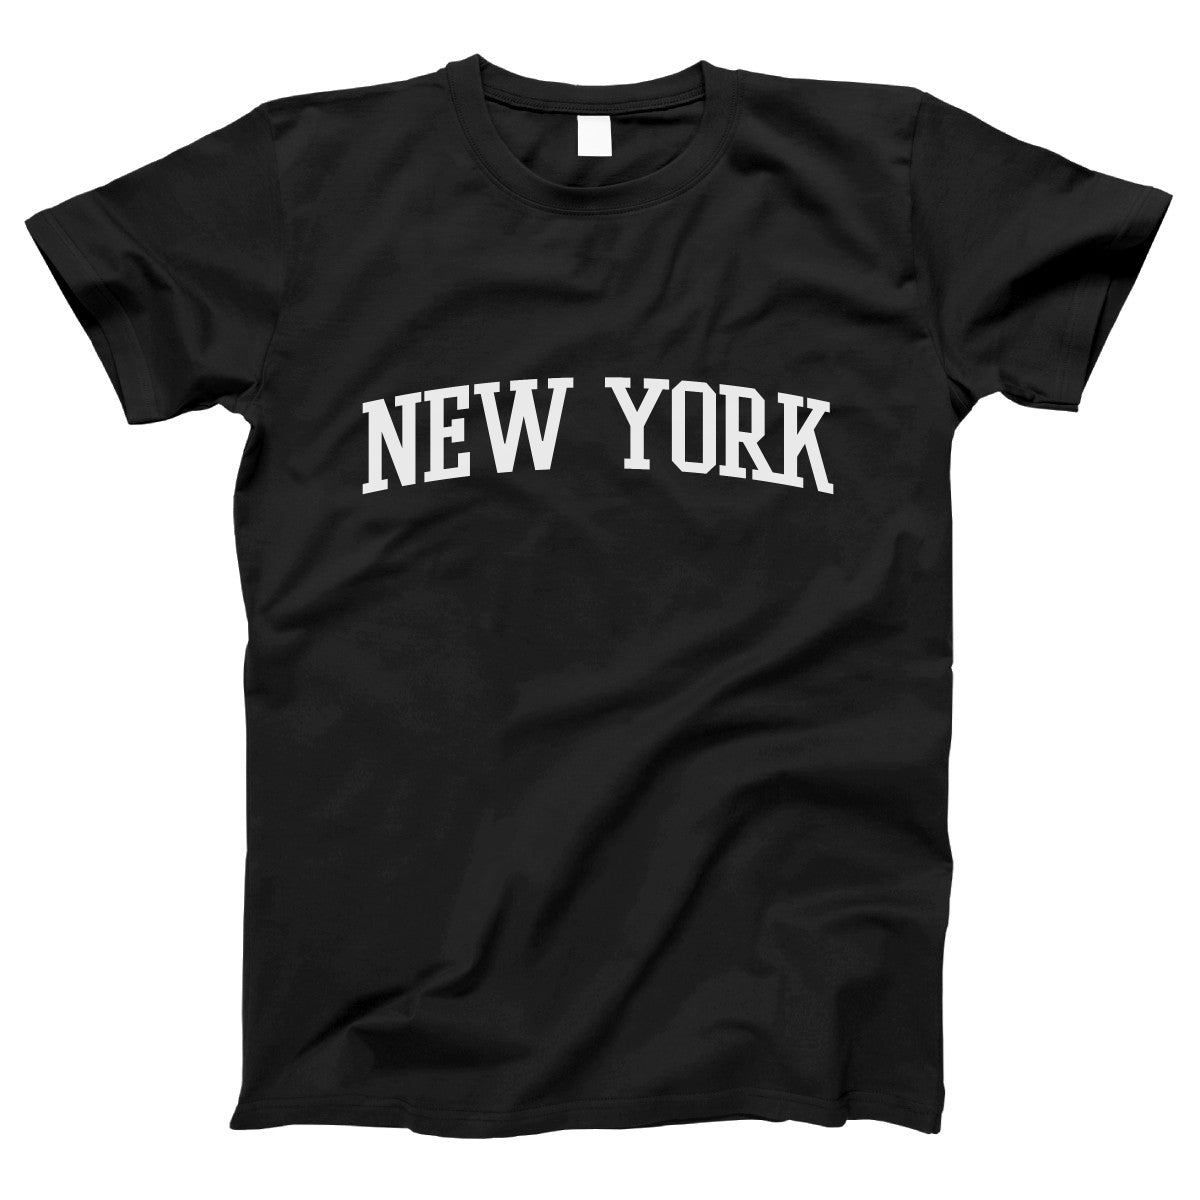 New York Women's T-shirt